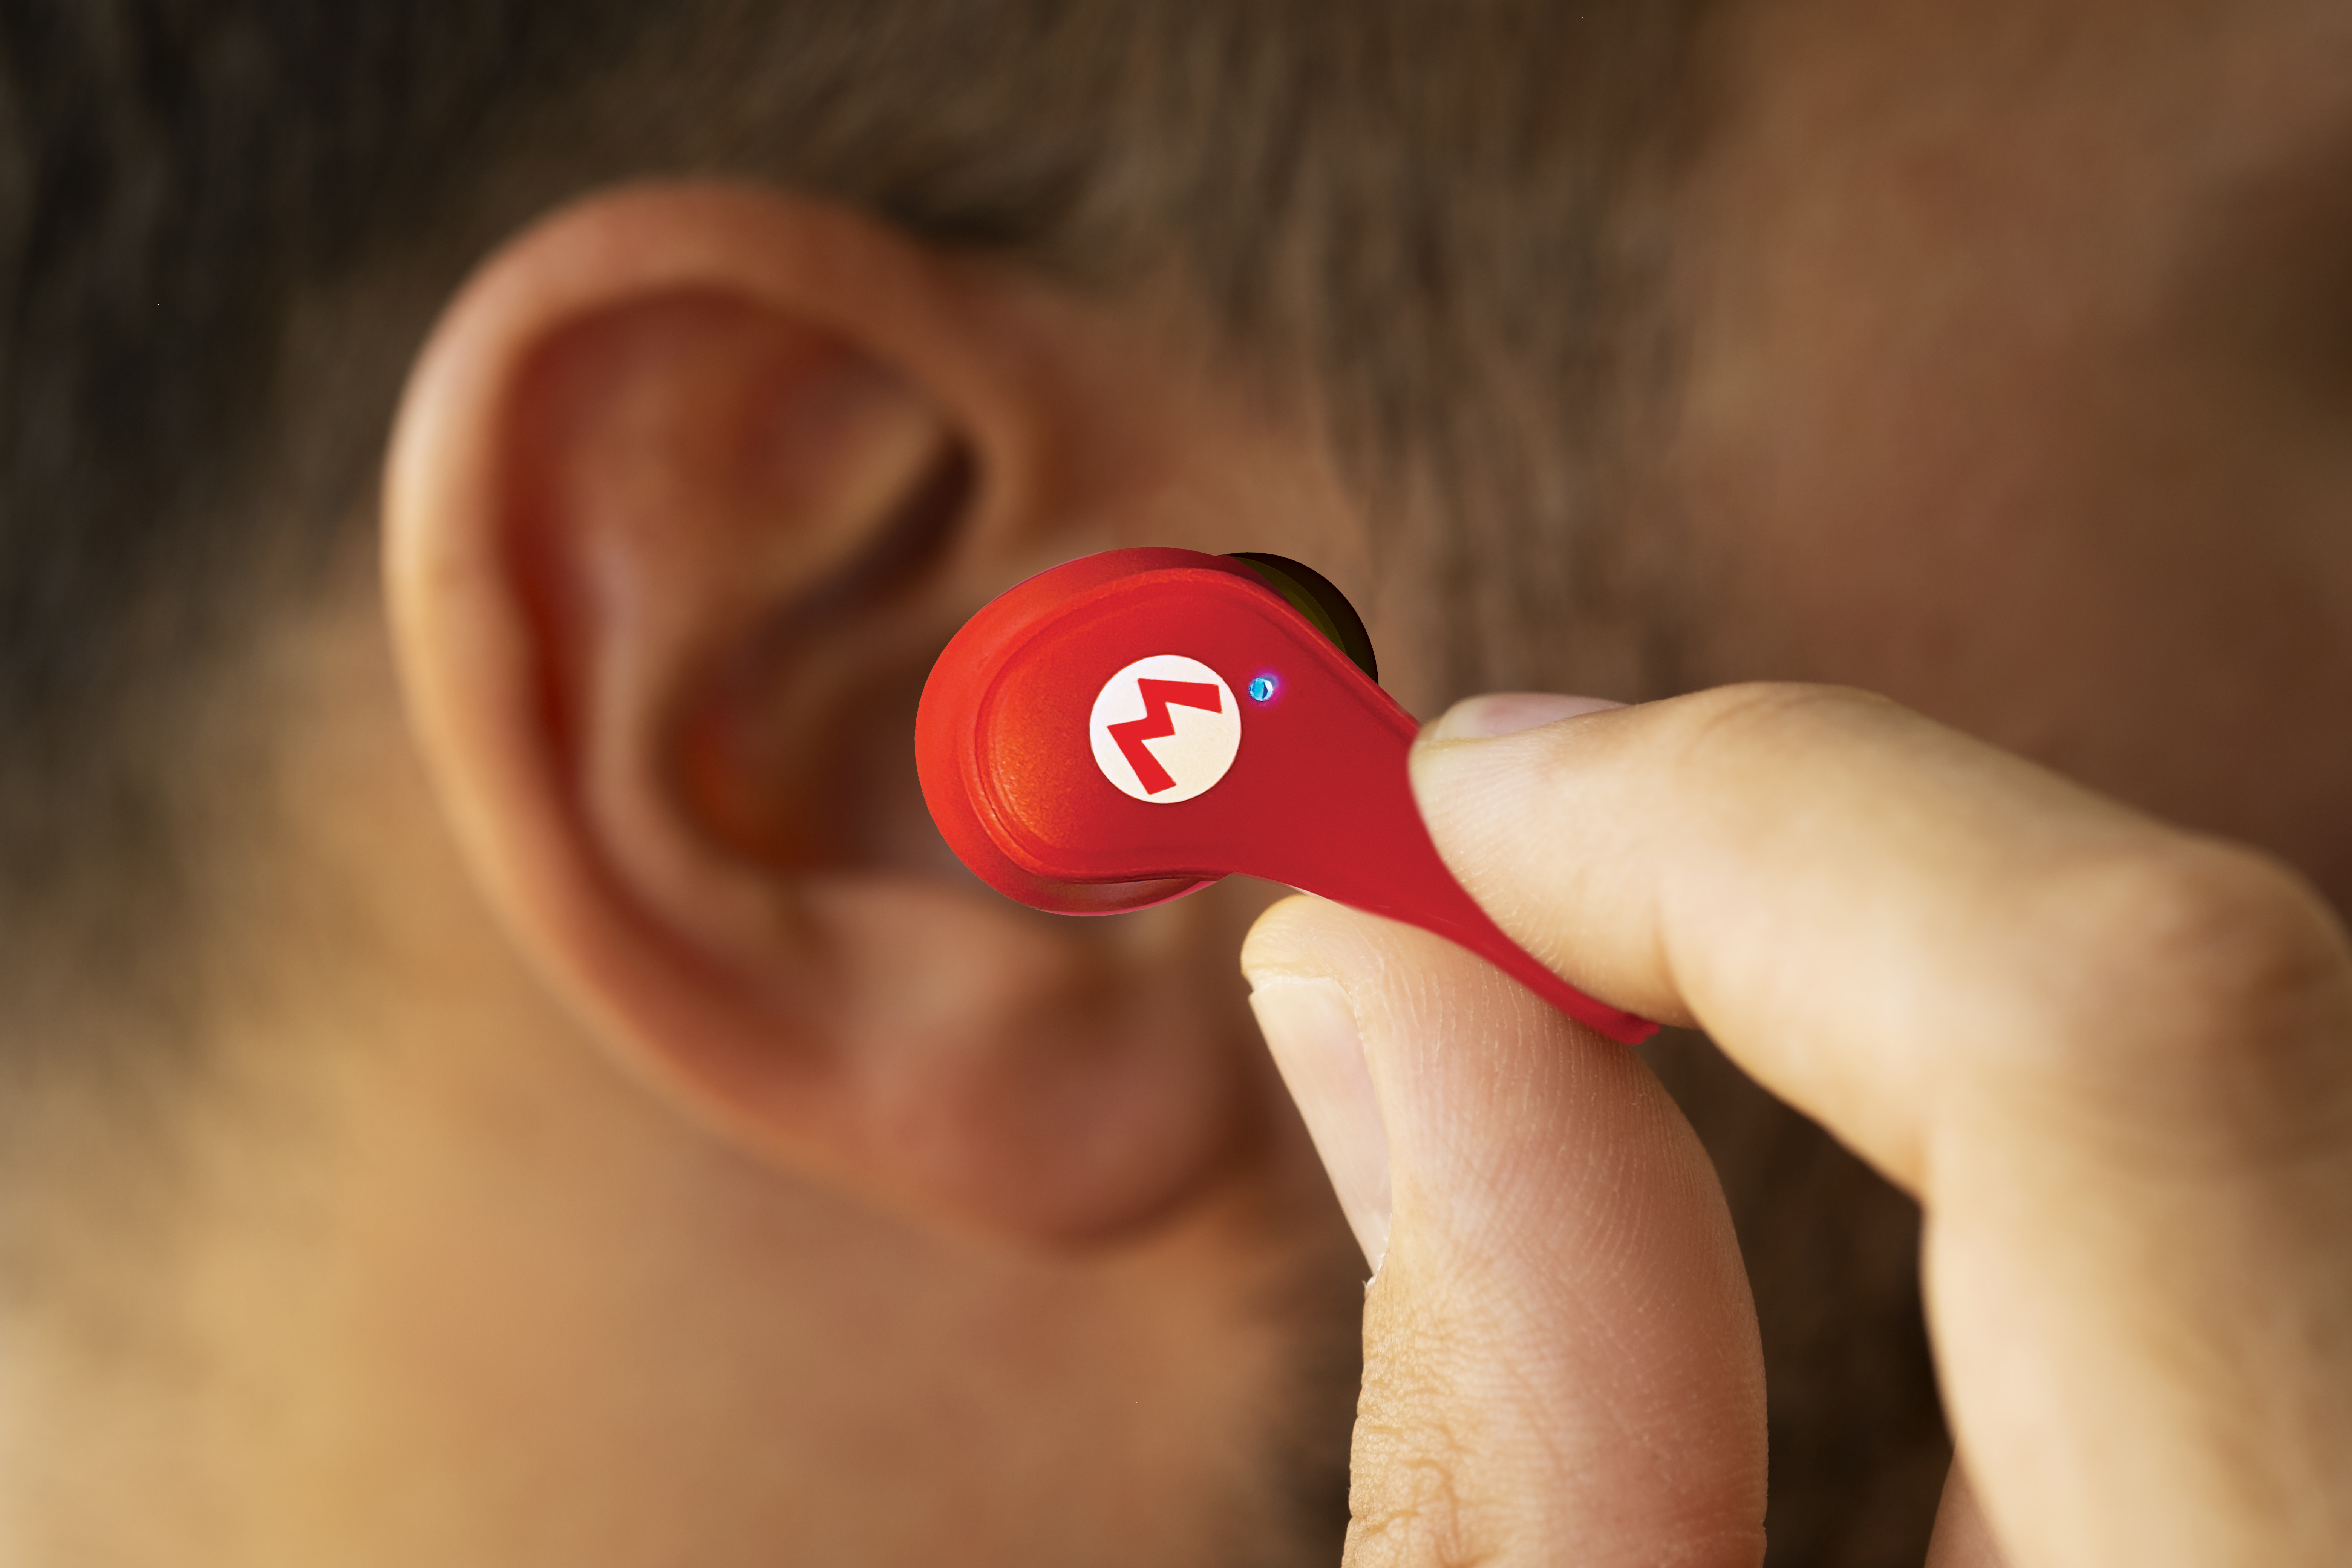 Kopfhörer Super In-ear TECHNOLOGIES rot Bluetooth Mario, OTL